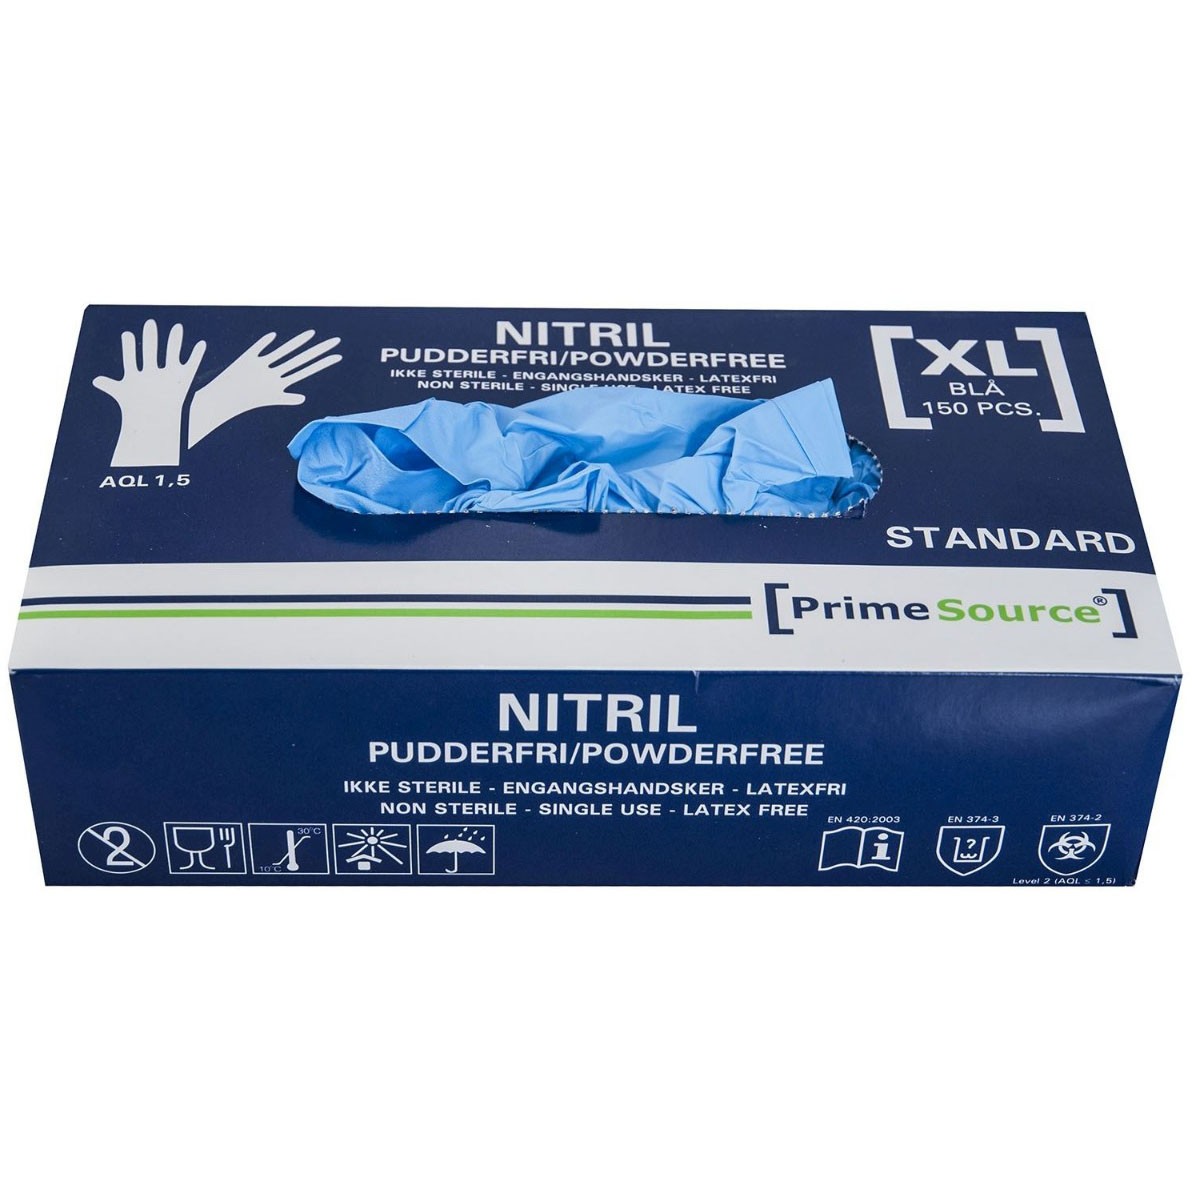 Prime Source nitril handsker uden pudder str. XL blå 150 stk